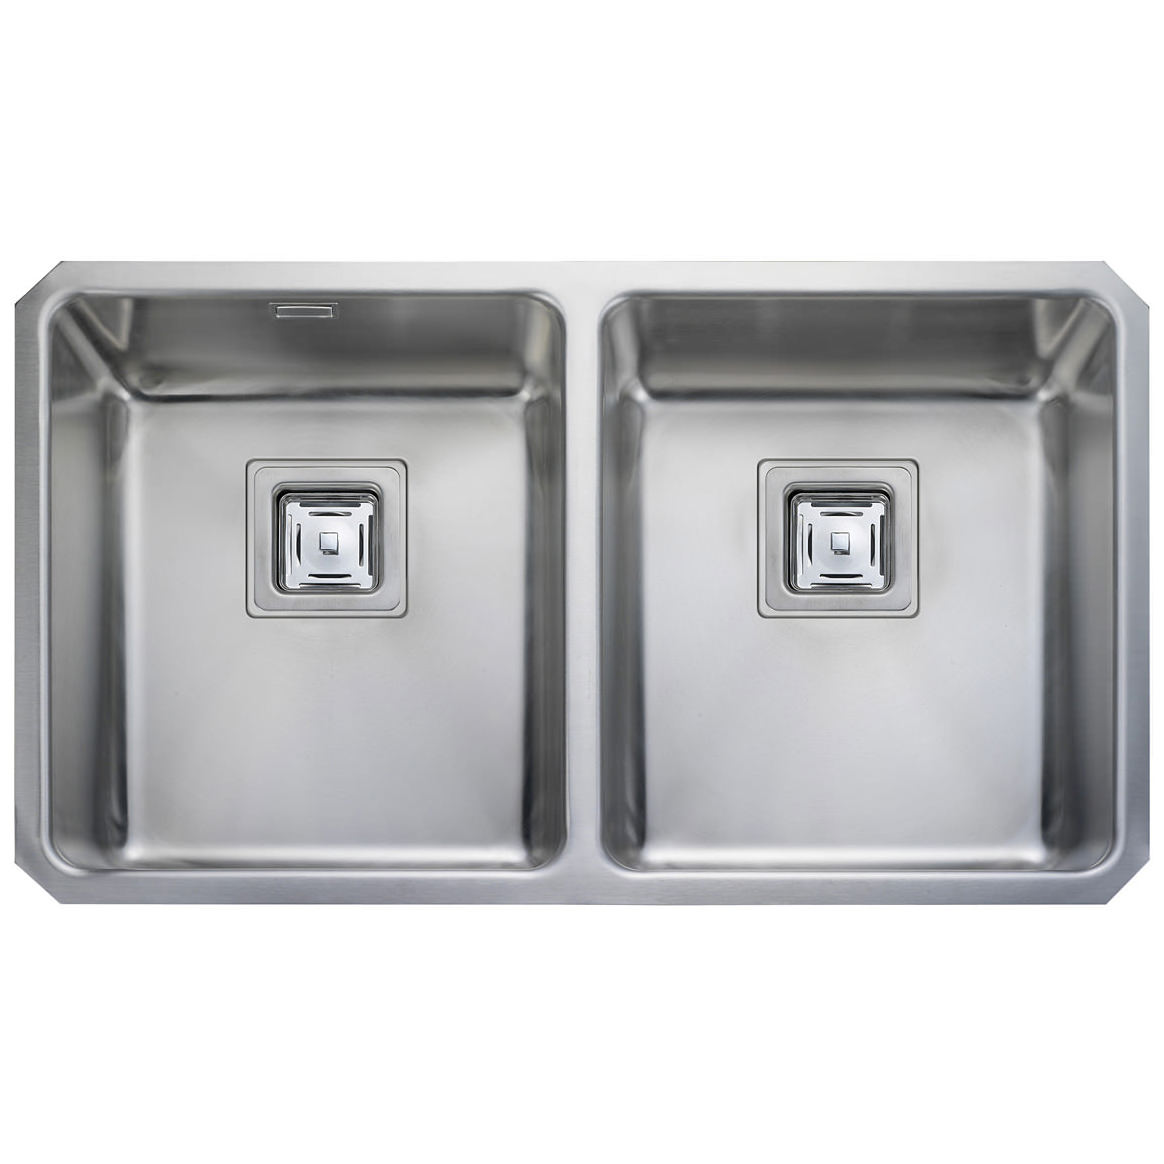 2.0 Equal Twin Bowl Stainless Steel Reversible Kitchen Sink & Waste Plumbing Kit 